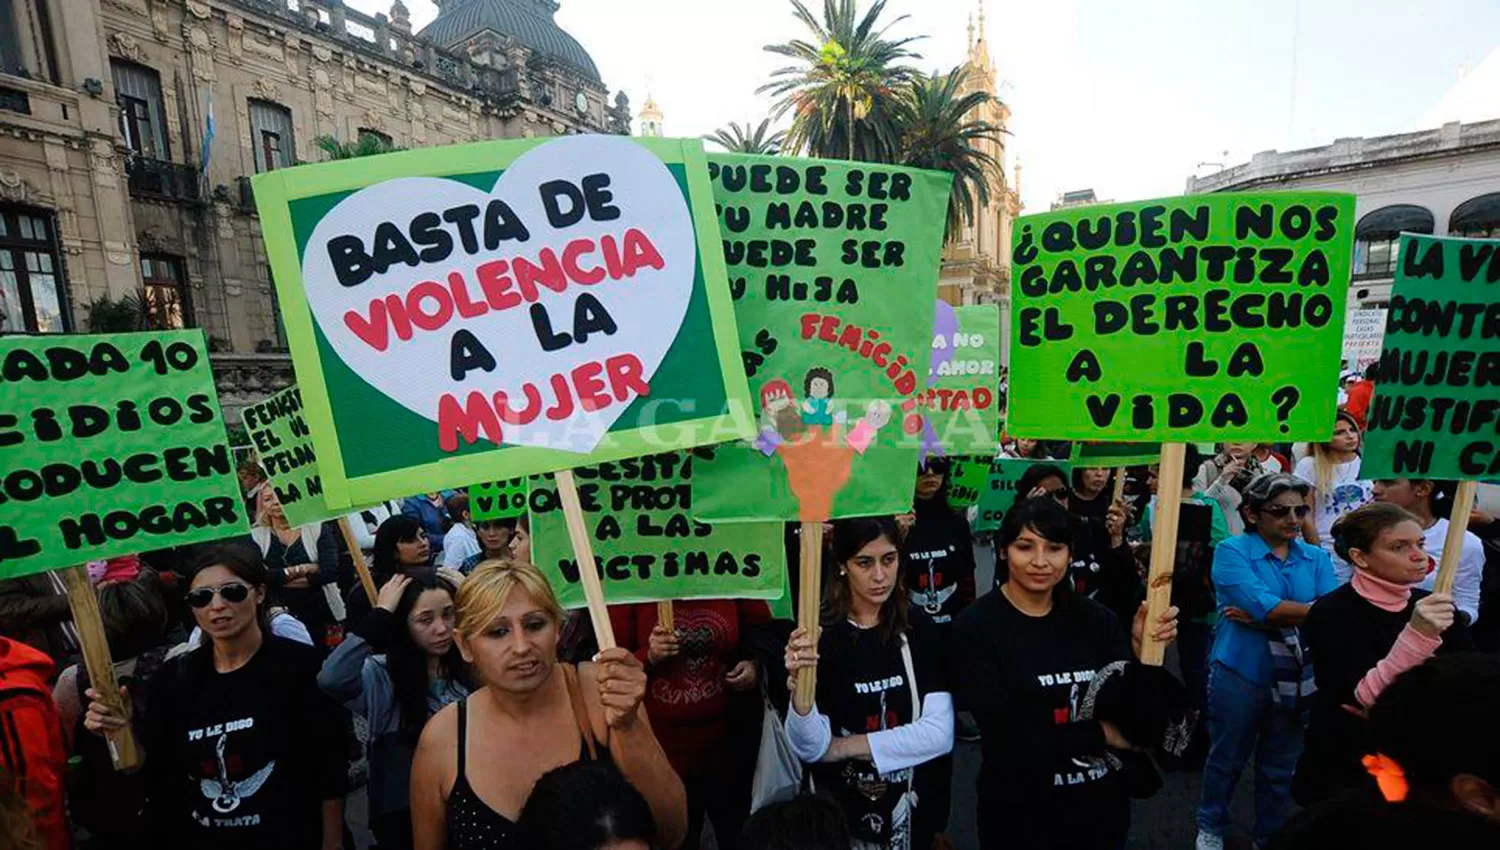 VOLVERÁN A MARCHAR. Las mujeres se movilizarán el viernes para volver a gritar ni una menos. FOTO LA GACETA/ARCHIVO